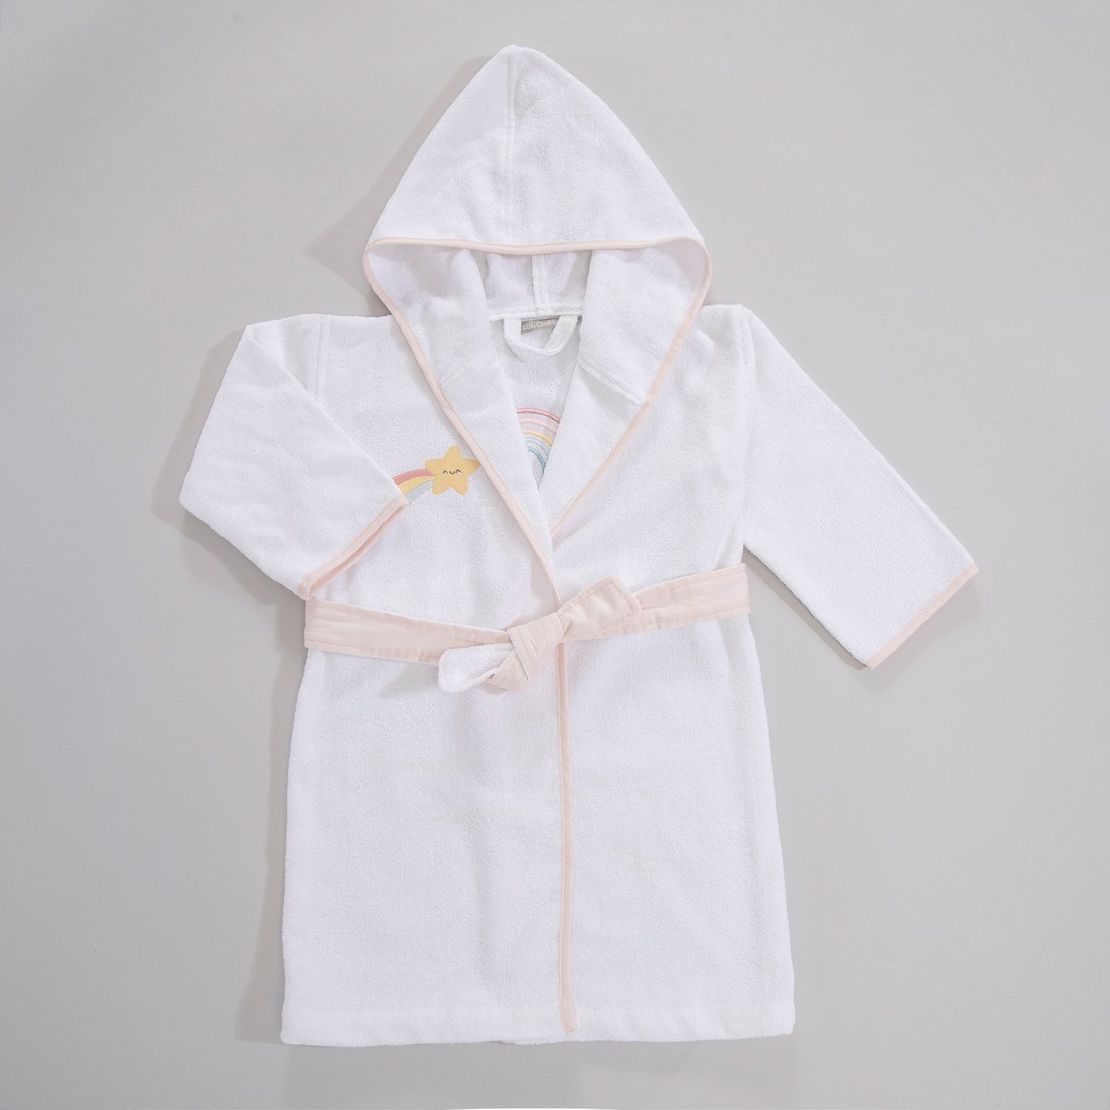 Детский махровый халат Rainbow, для девочки с аппликацией Радуга единорога 3-4 года, белый